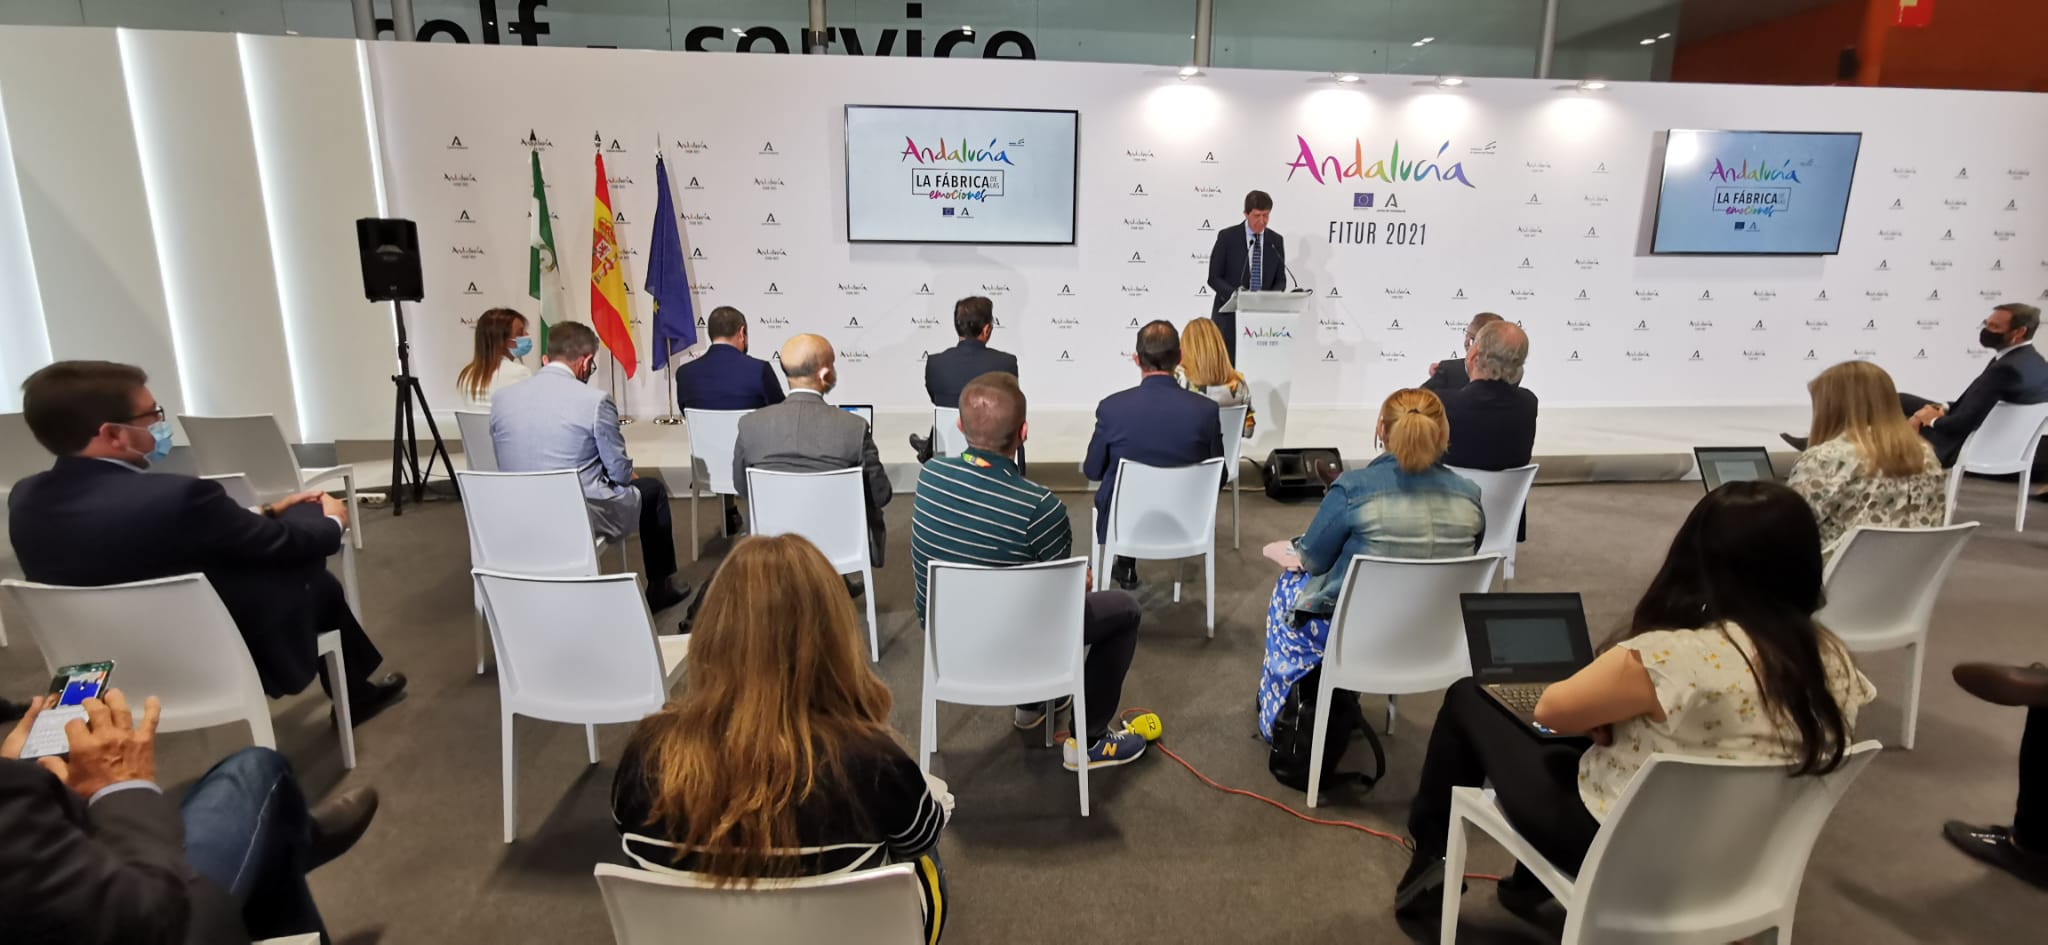 La edición de 2021 se celebra en Ifema Madrid hasta el próximo domingo como la gran apuesta estratégica del Gobierno español para la recuperación del turismo.